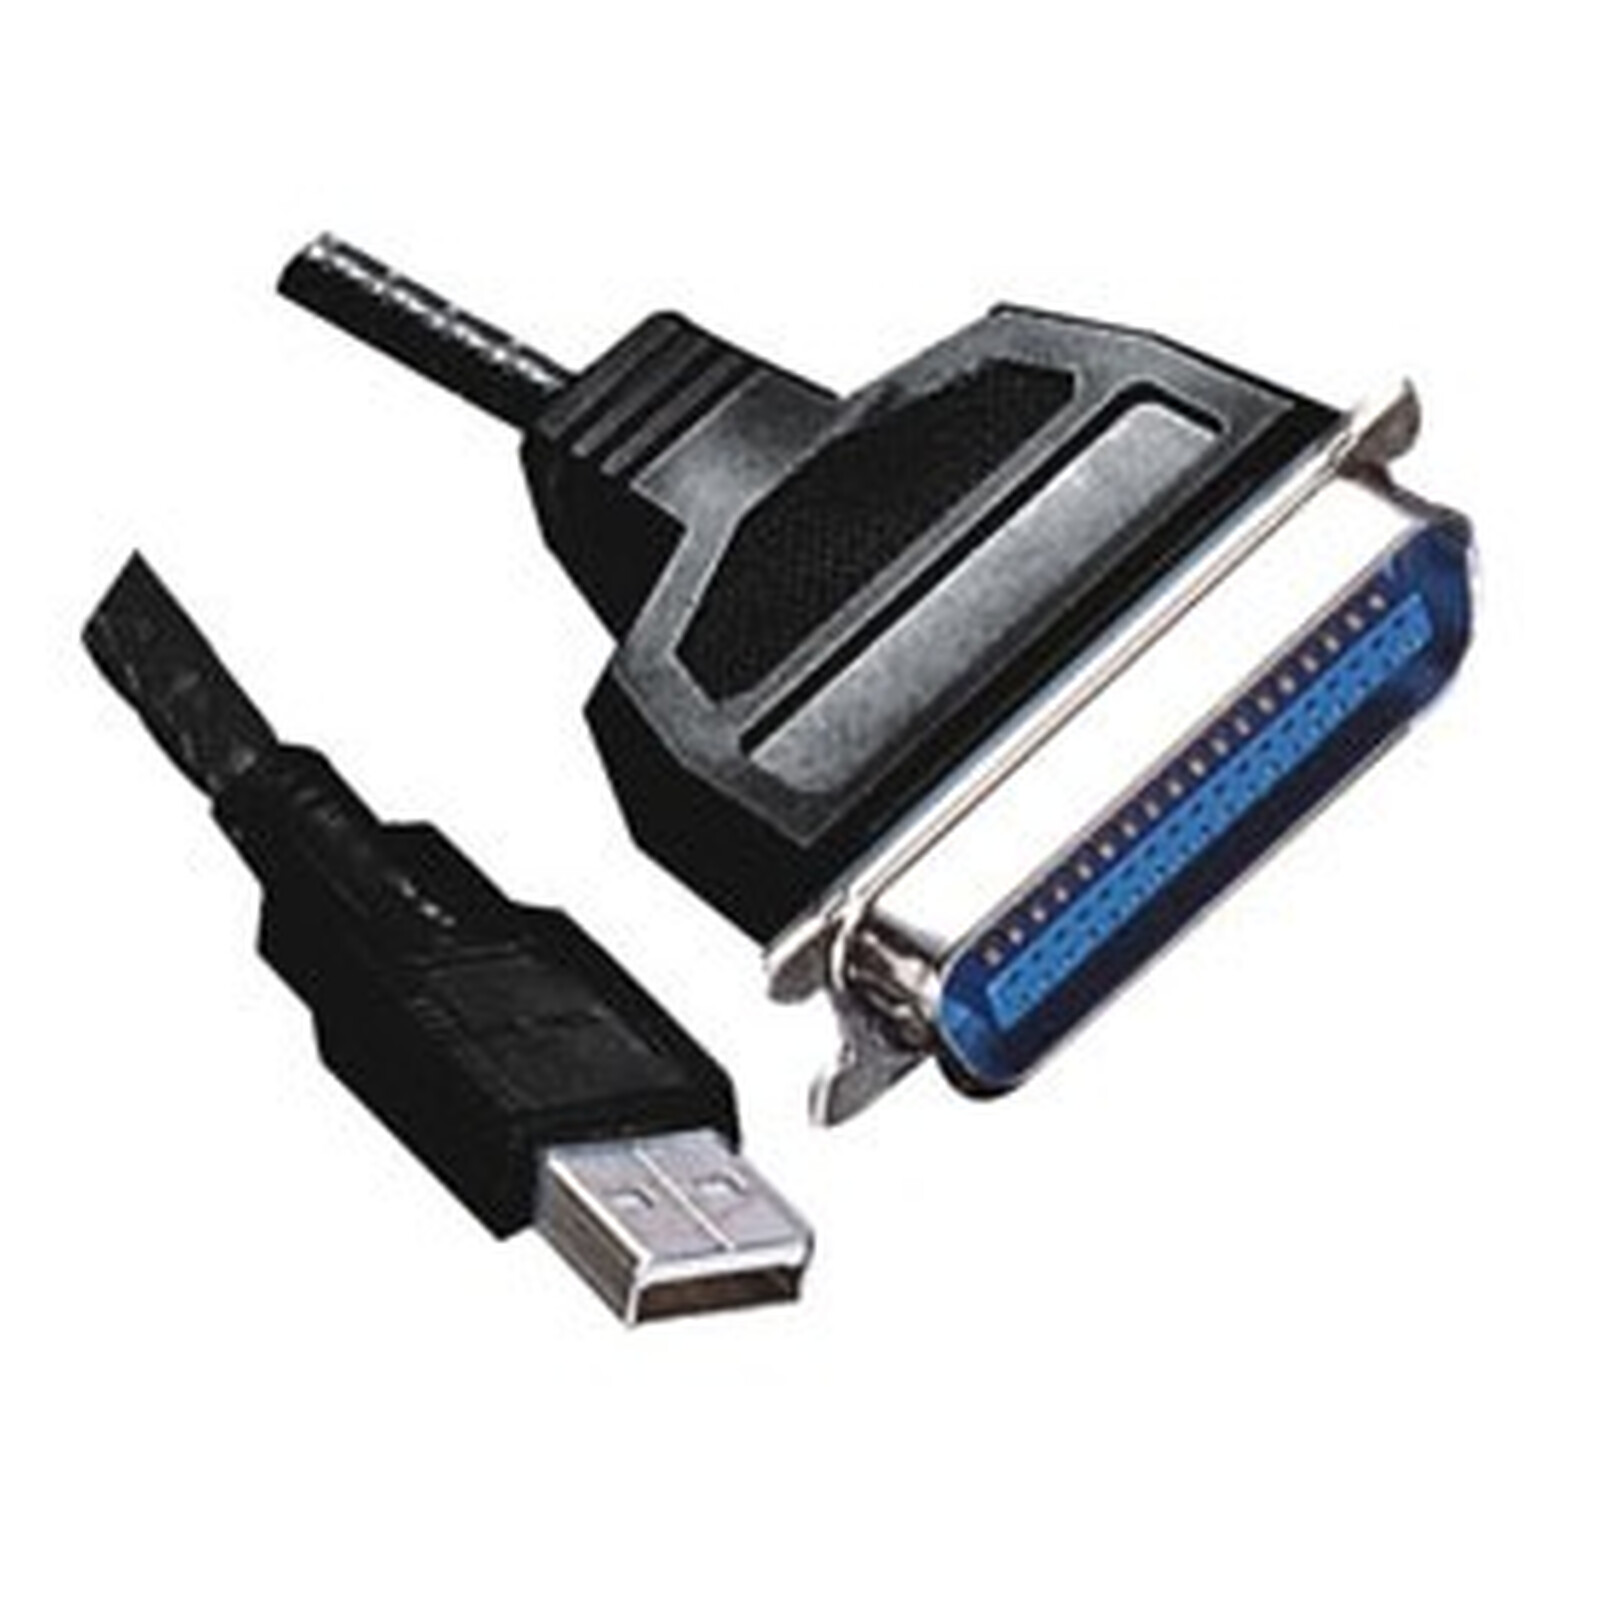 CABLE USB VERS IMPRIMANTE PARALLELE Centronics 36 - Achat/Vente